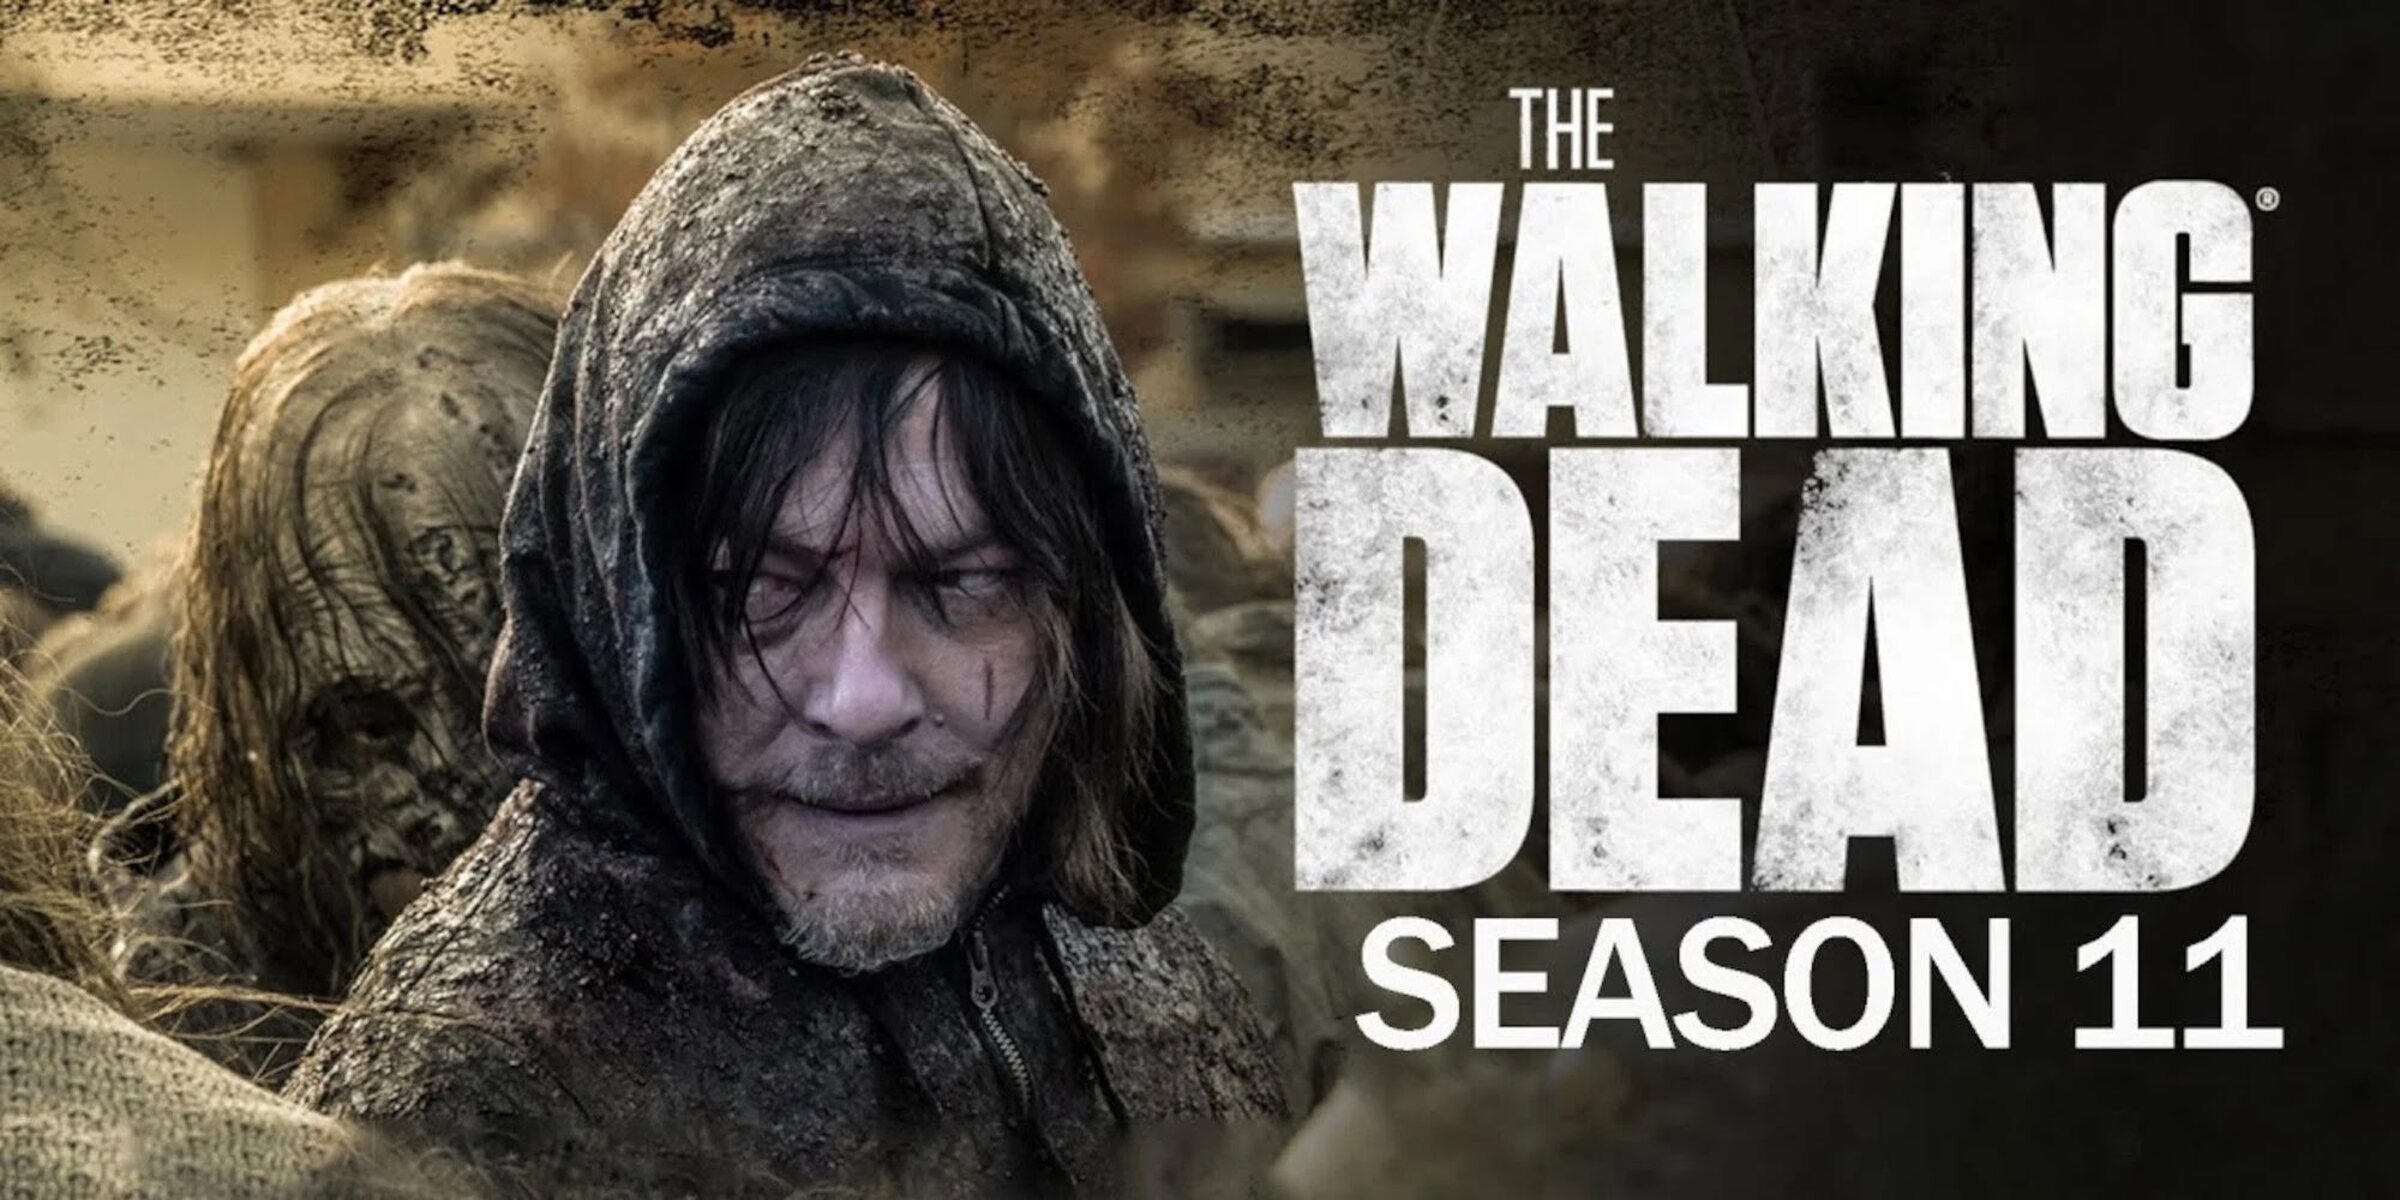 How To Watch Walking Dead Season 11